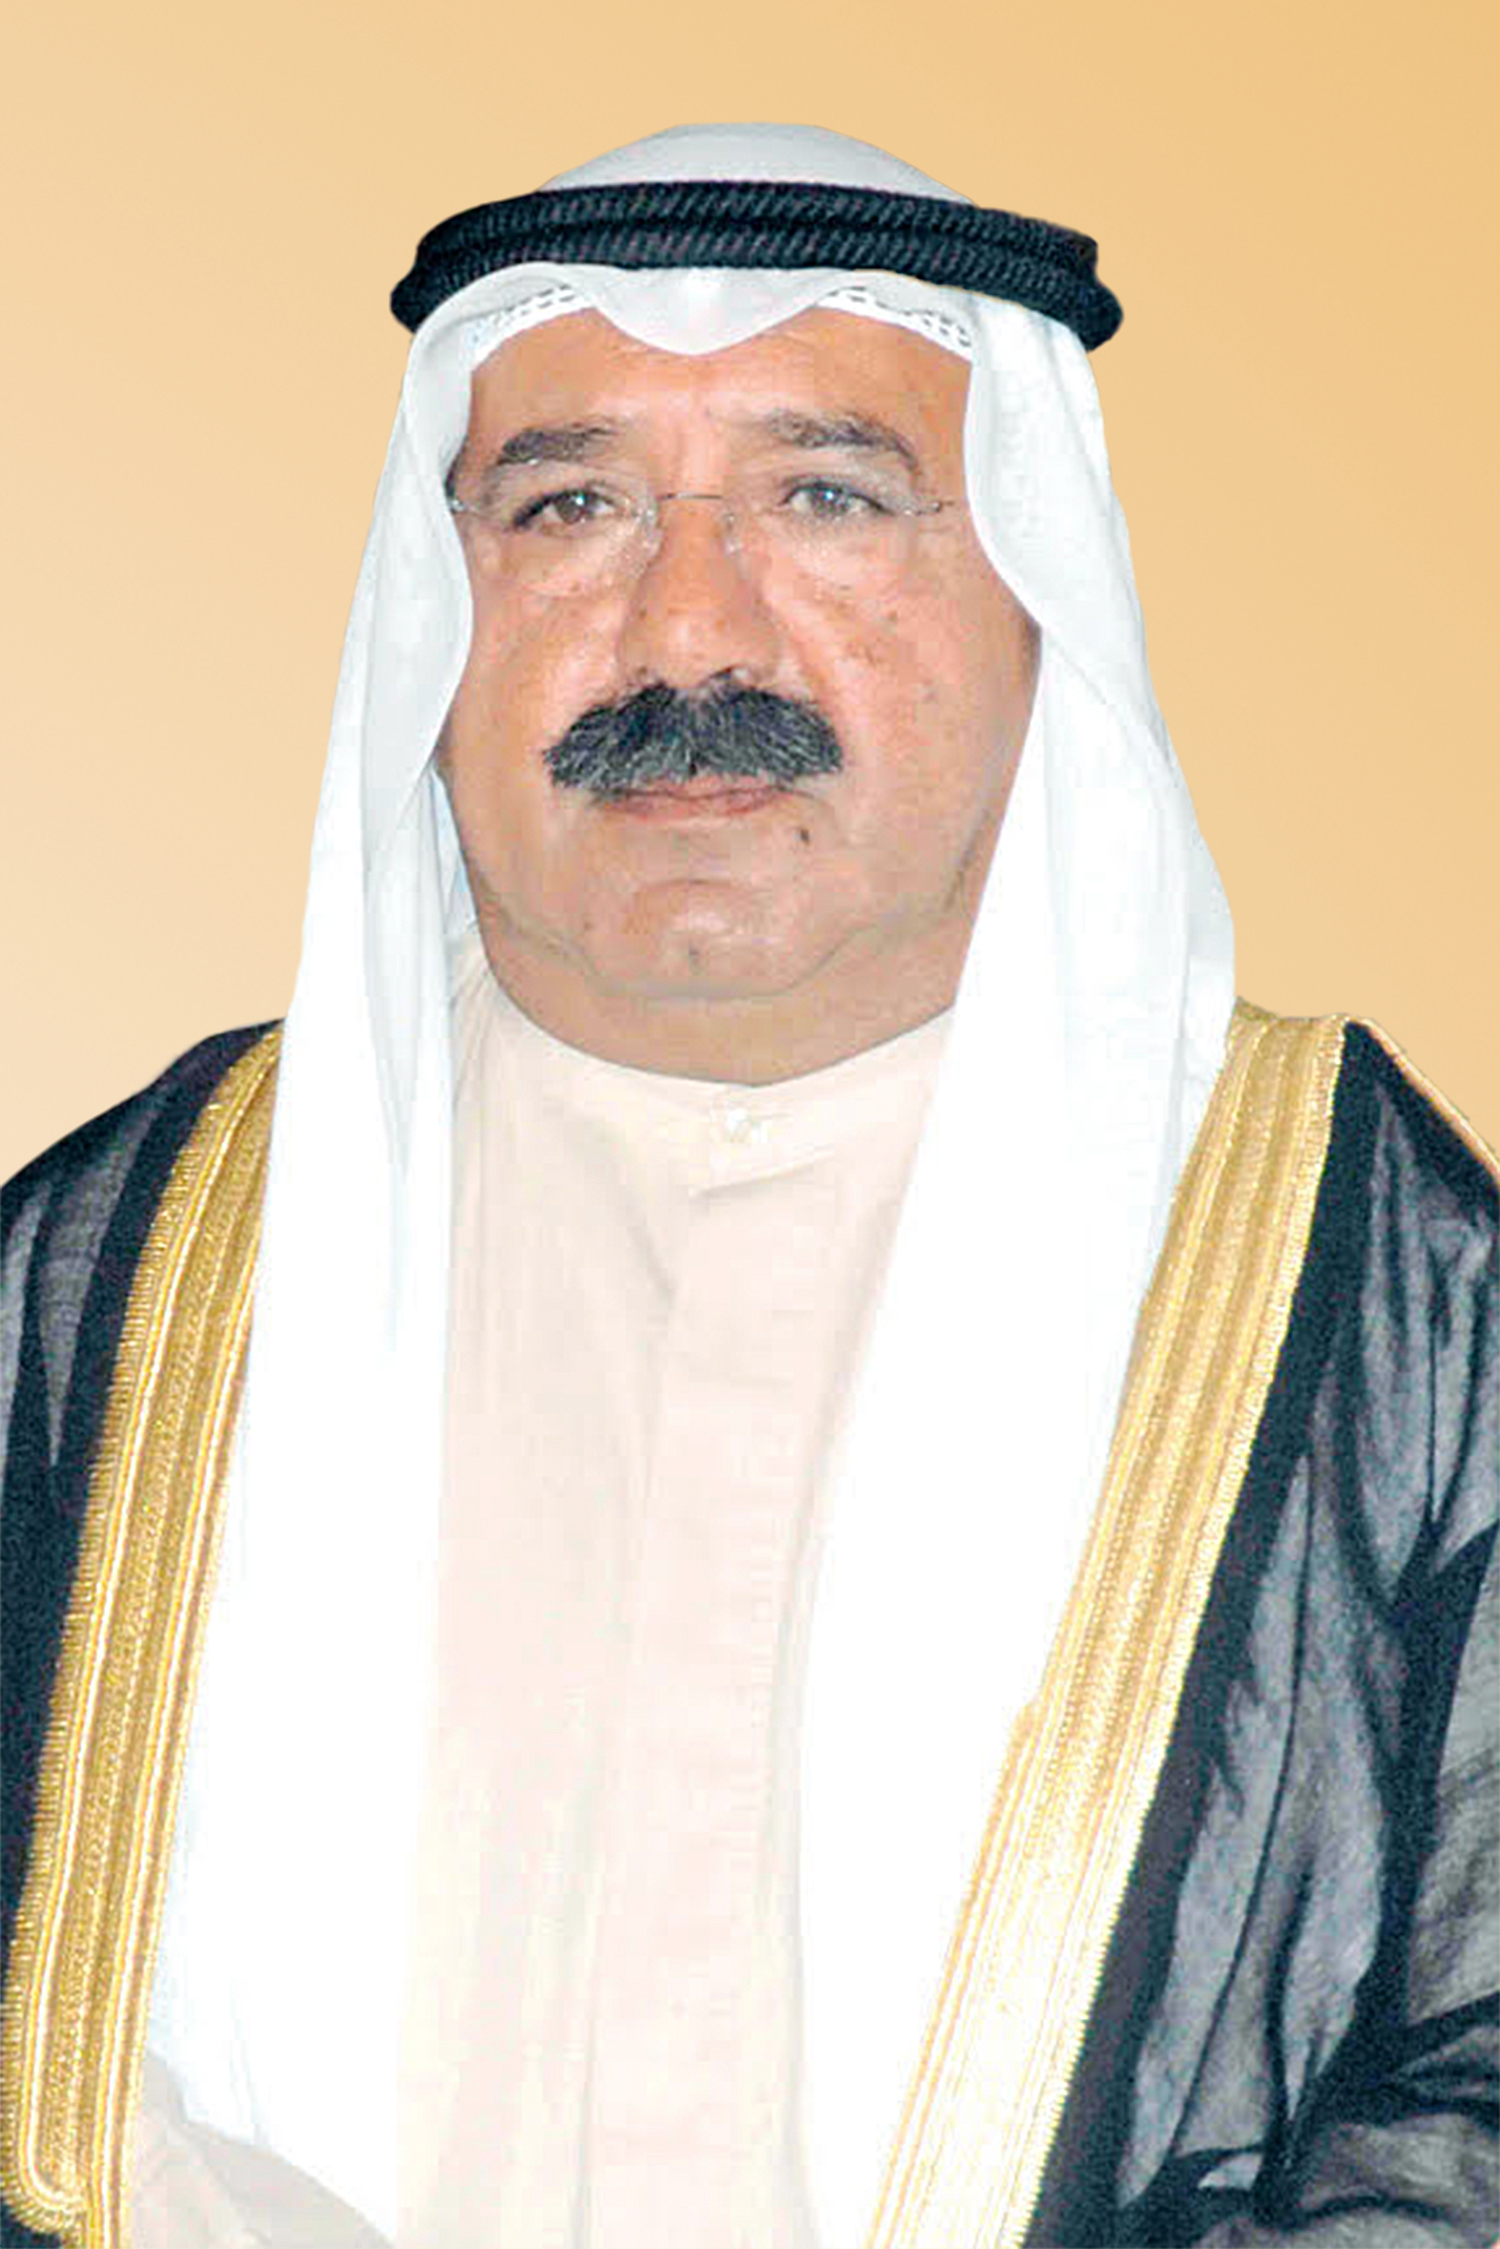 Kuwait's First Deputy Prime Minister and Defence Minister Sheikh Nasser Sabah Al-Ahmad Al-Sabah